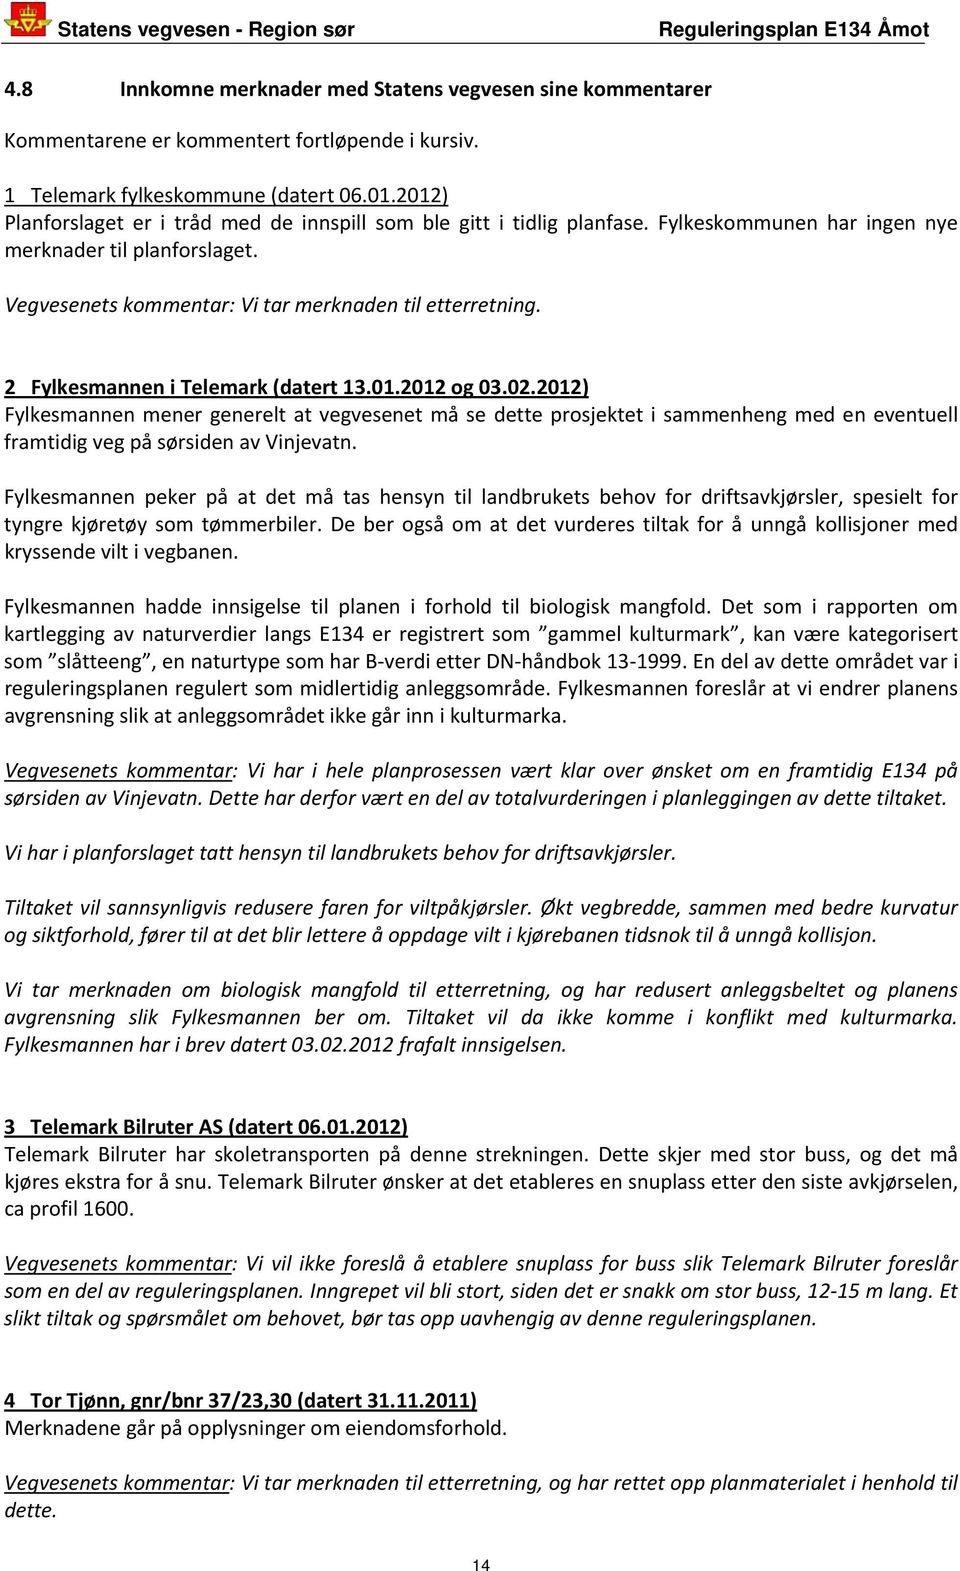 2 Fylkesmannen i Telemark (datert 13.01.2012 og 03.02.2012) Fylkesmannen mener generelt at vegvesenet må se dette prosjektet i sammenheng med en eventuell framtidig veg på sørsiden av Vinjevatn.